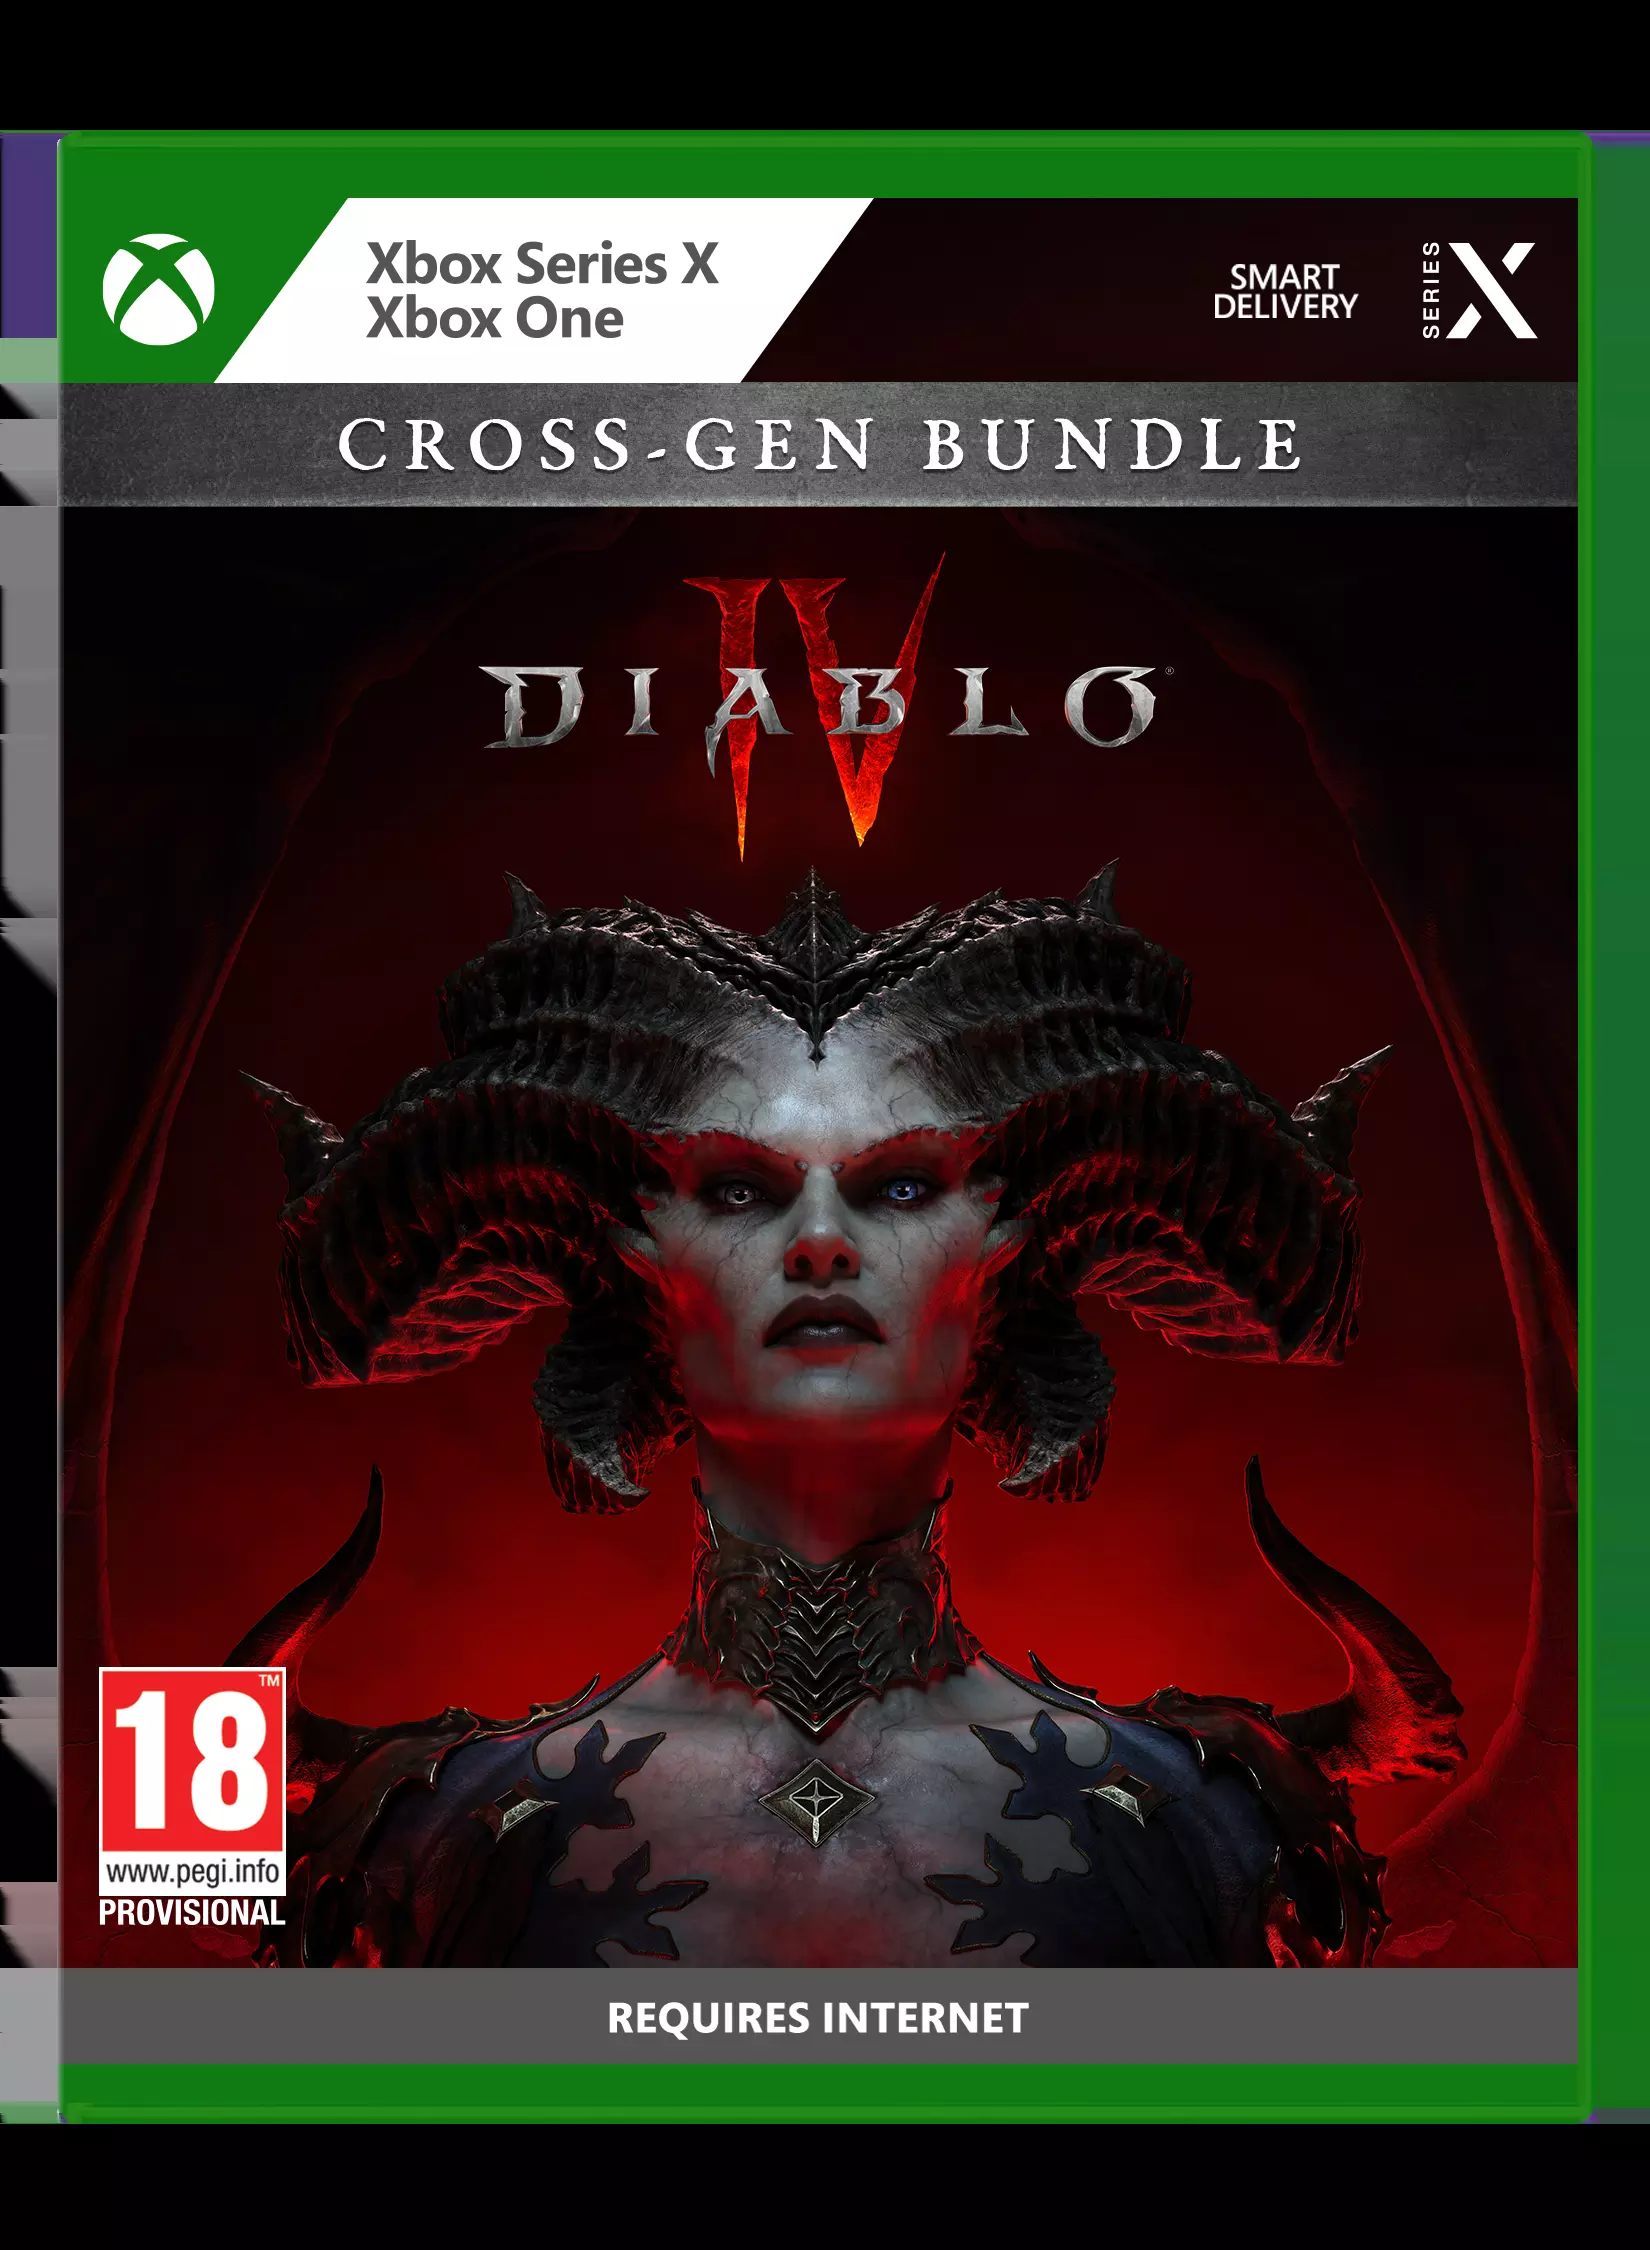 Diablo Iv Cross-Gen Bundle